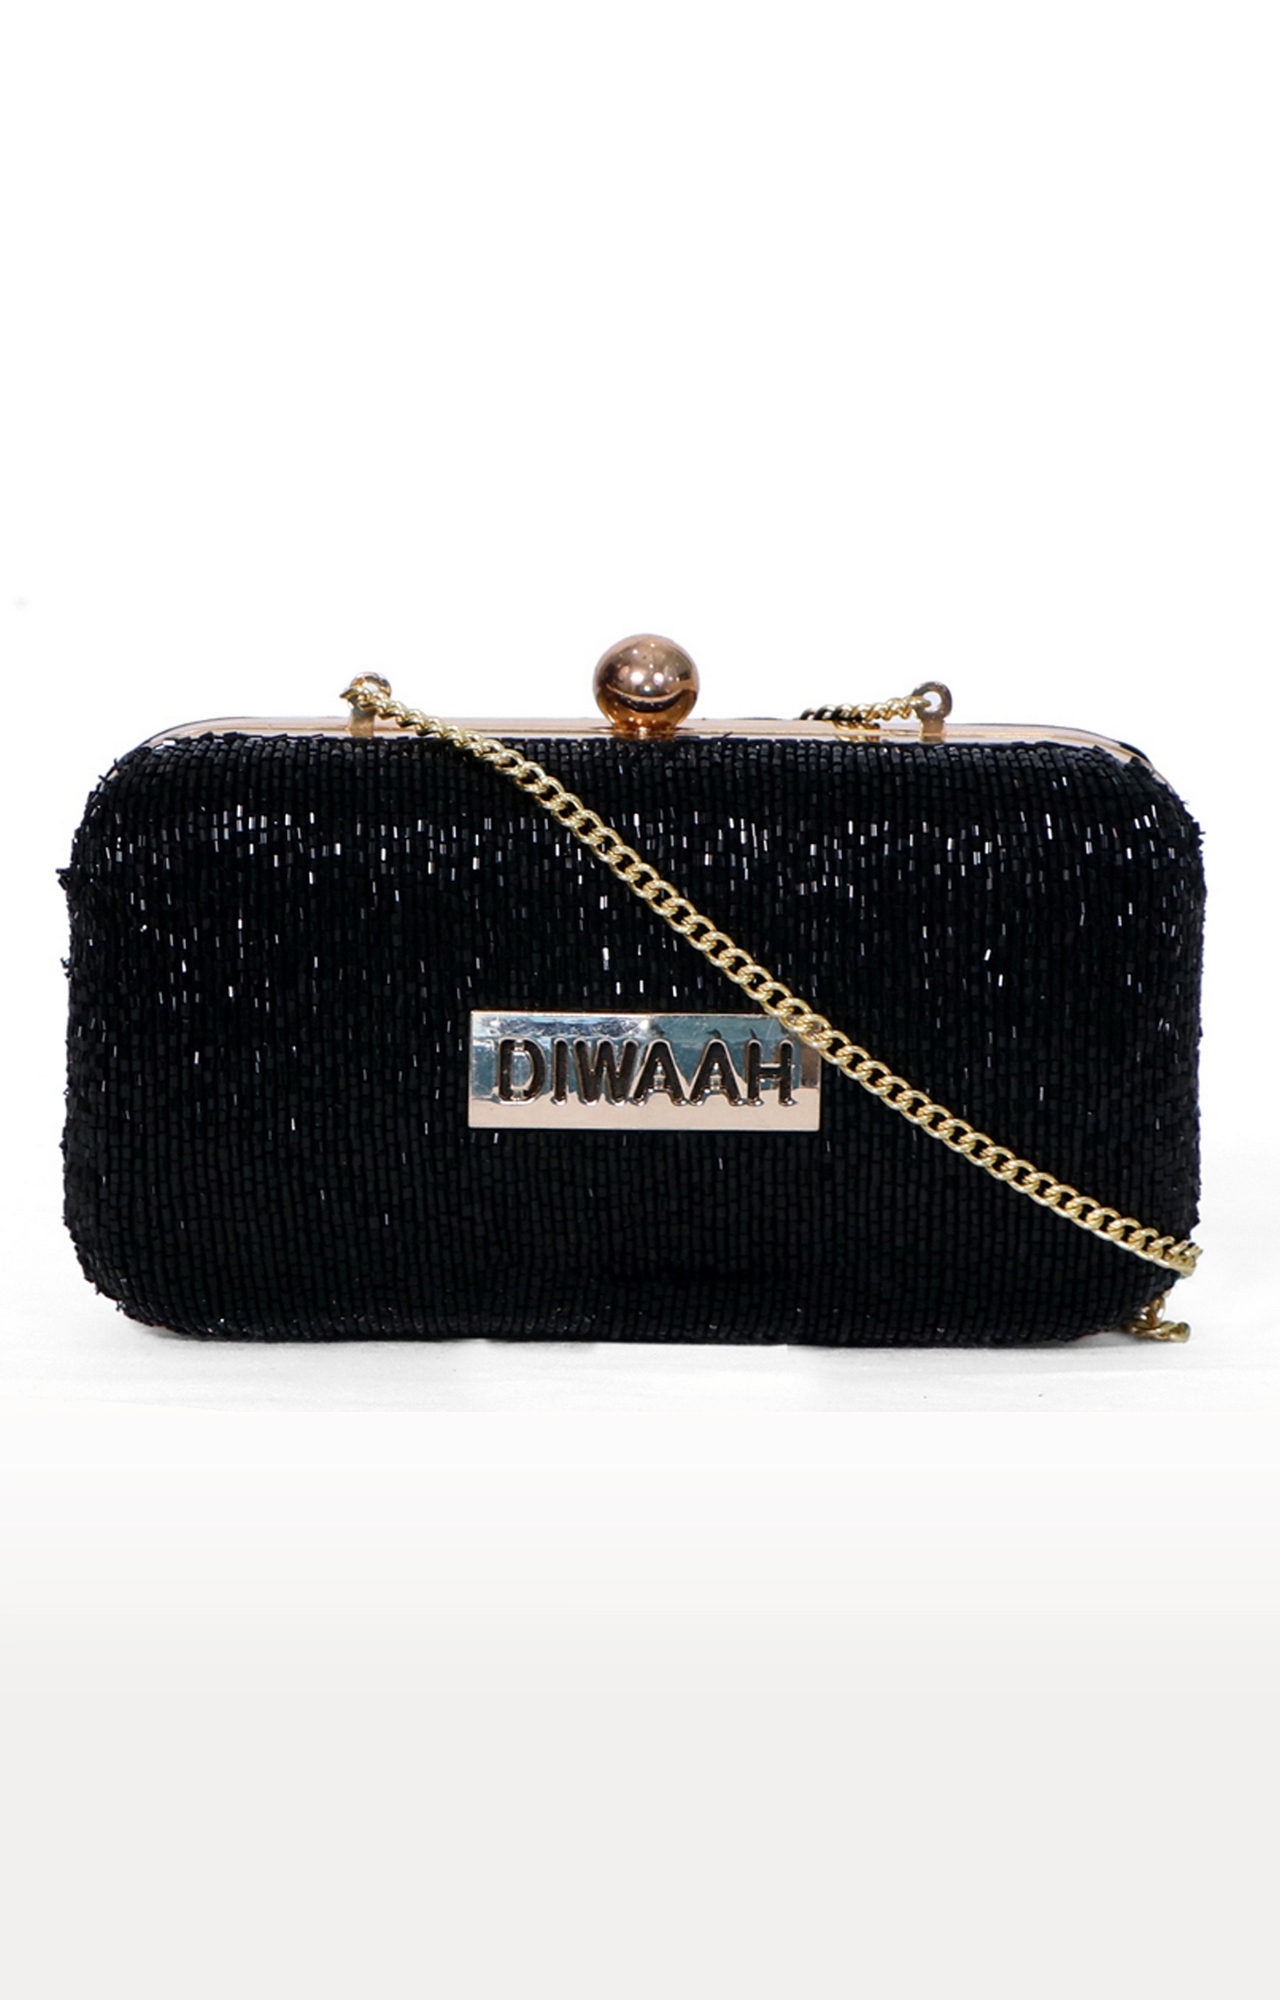 DIWAAH | Diwaah Black Embellished Clutches